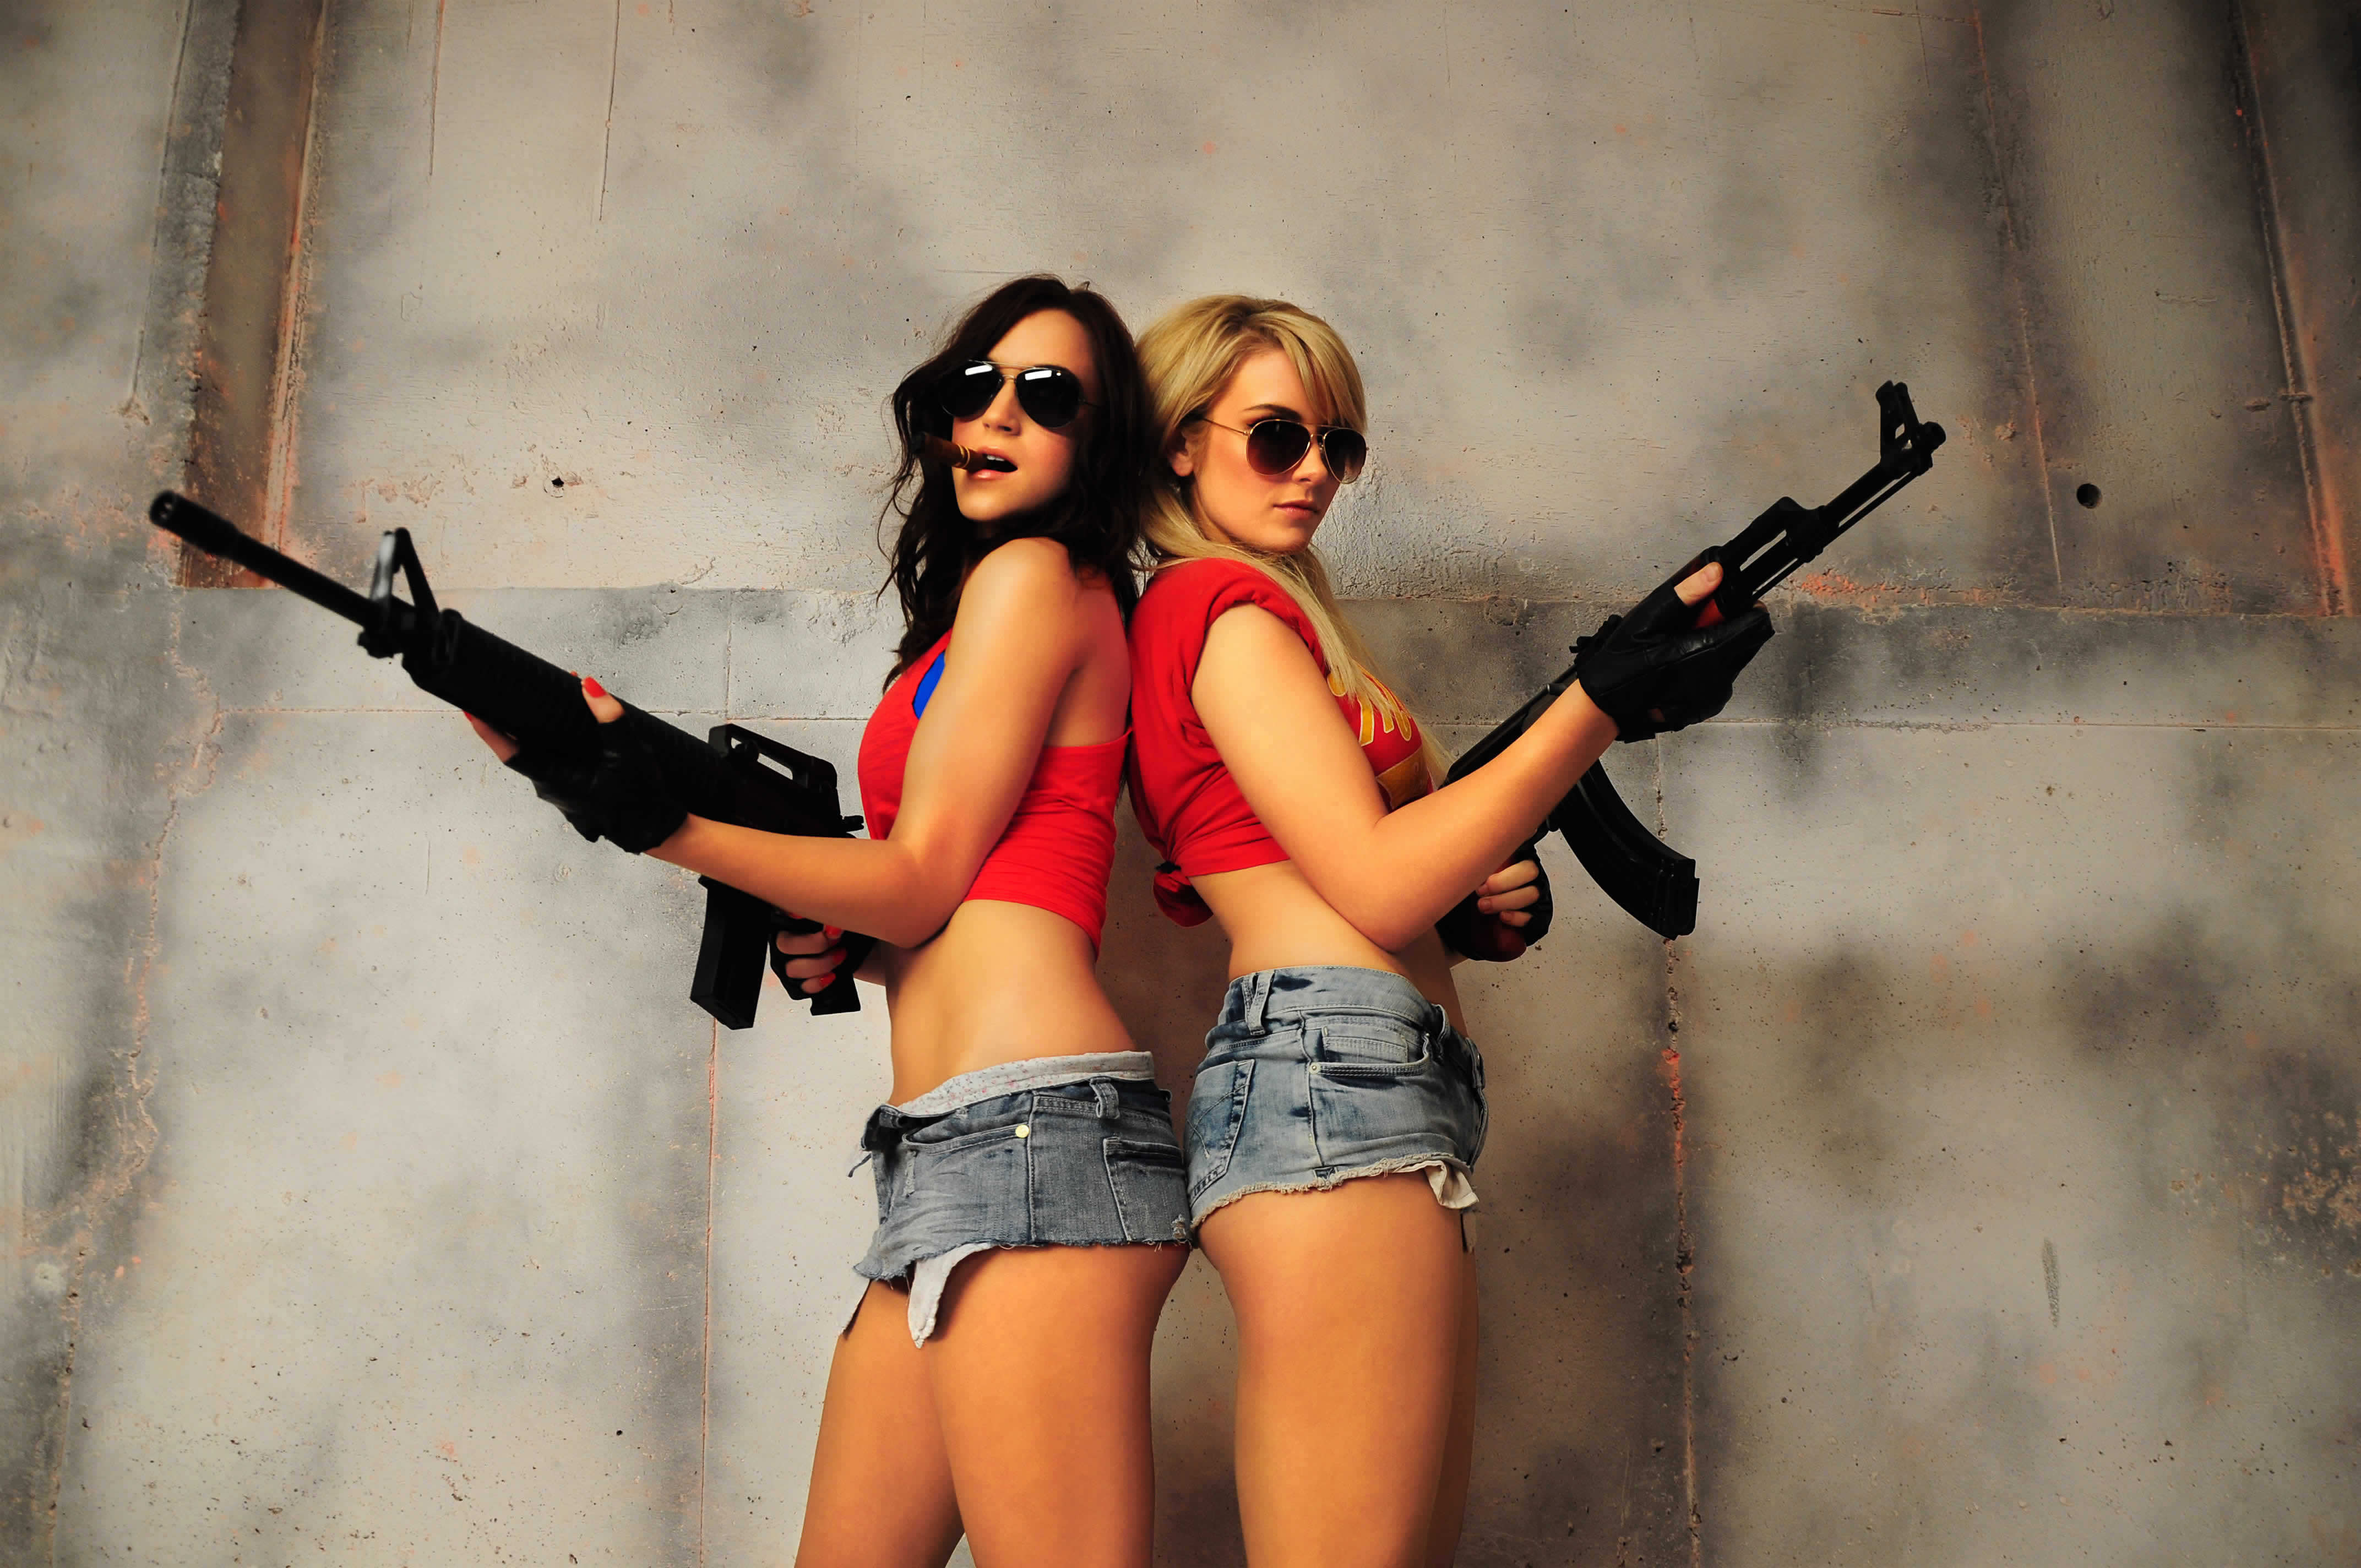 Телки будут ли. Красивые девушки с оружием. Опасная девушка. Блондинка и брюнетка с пистолетом. Девушка с оружием в очках.